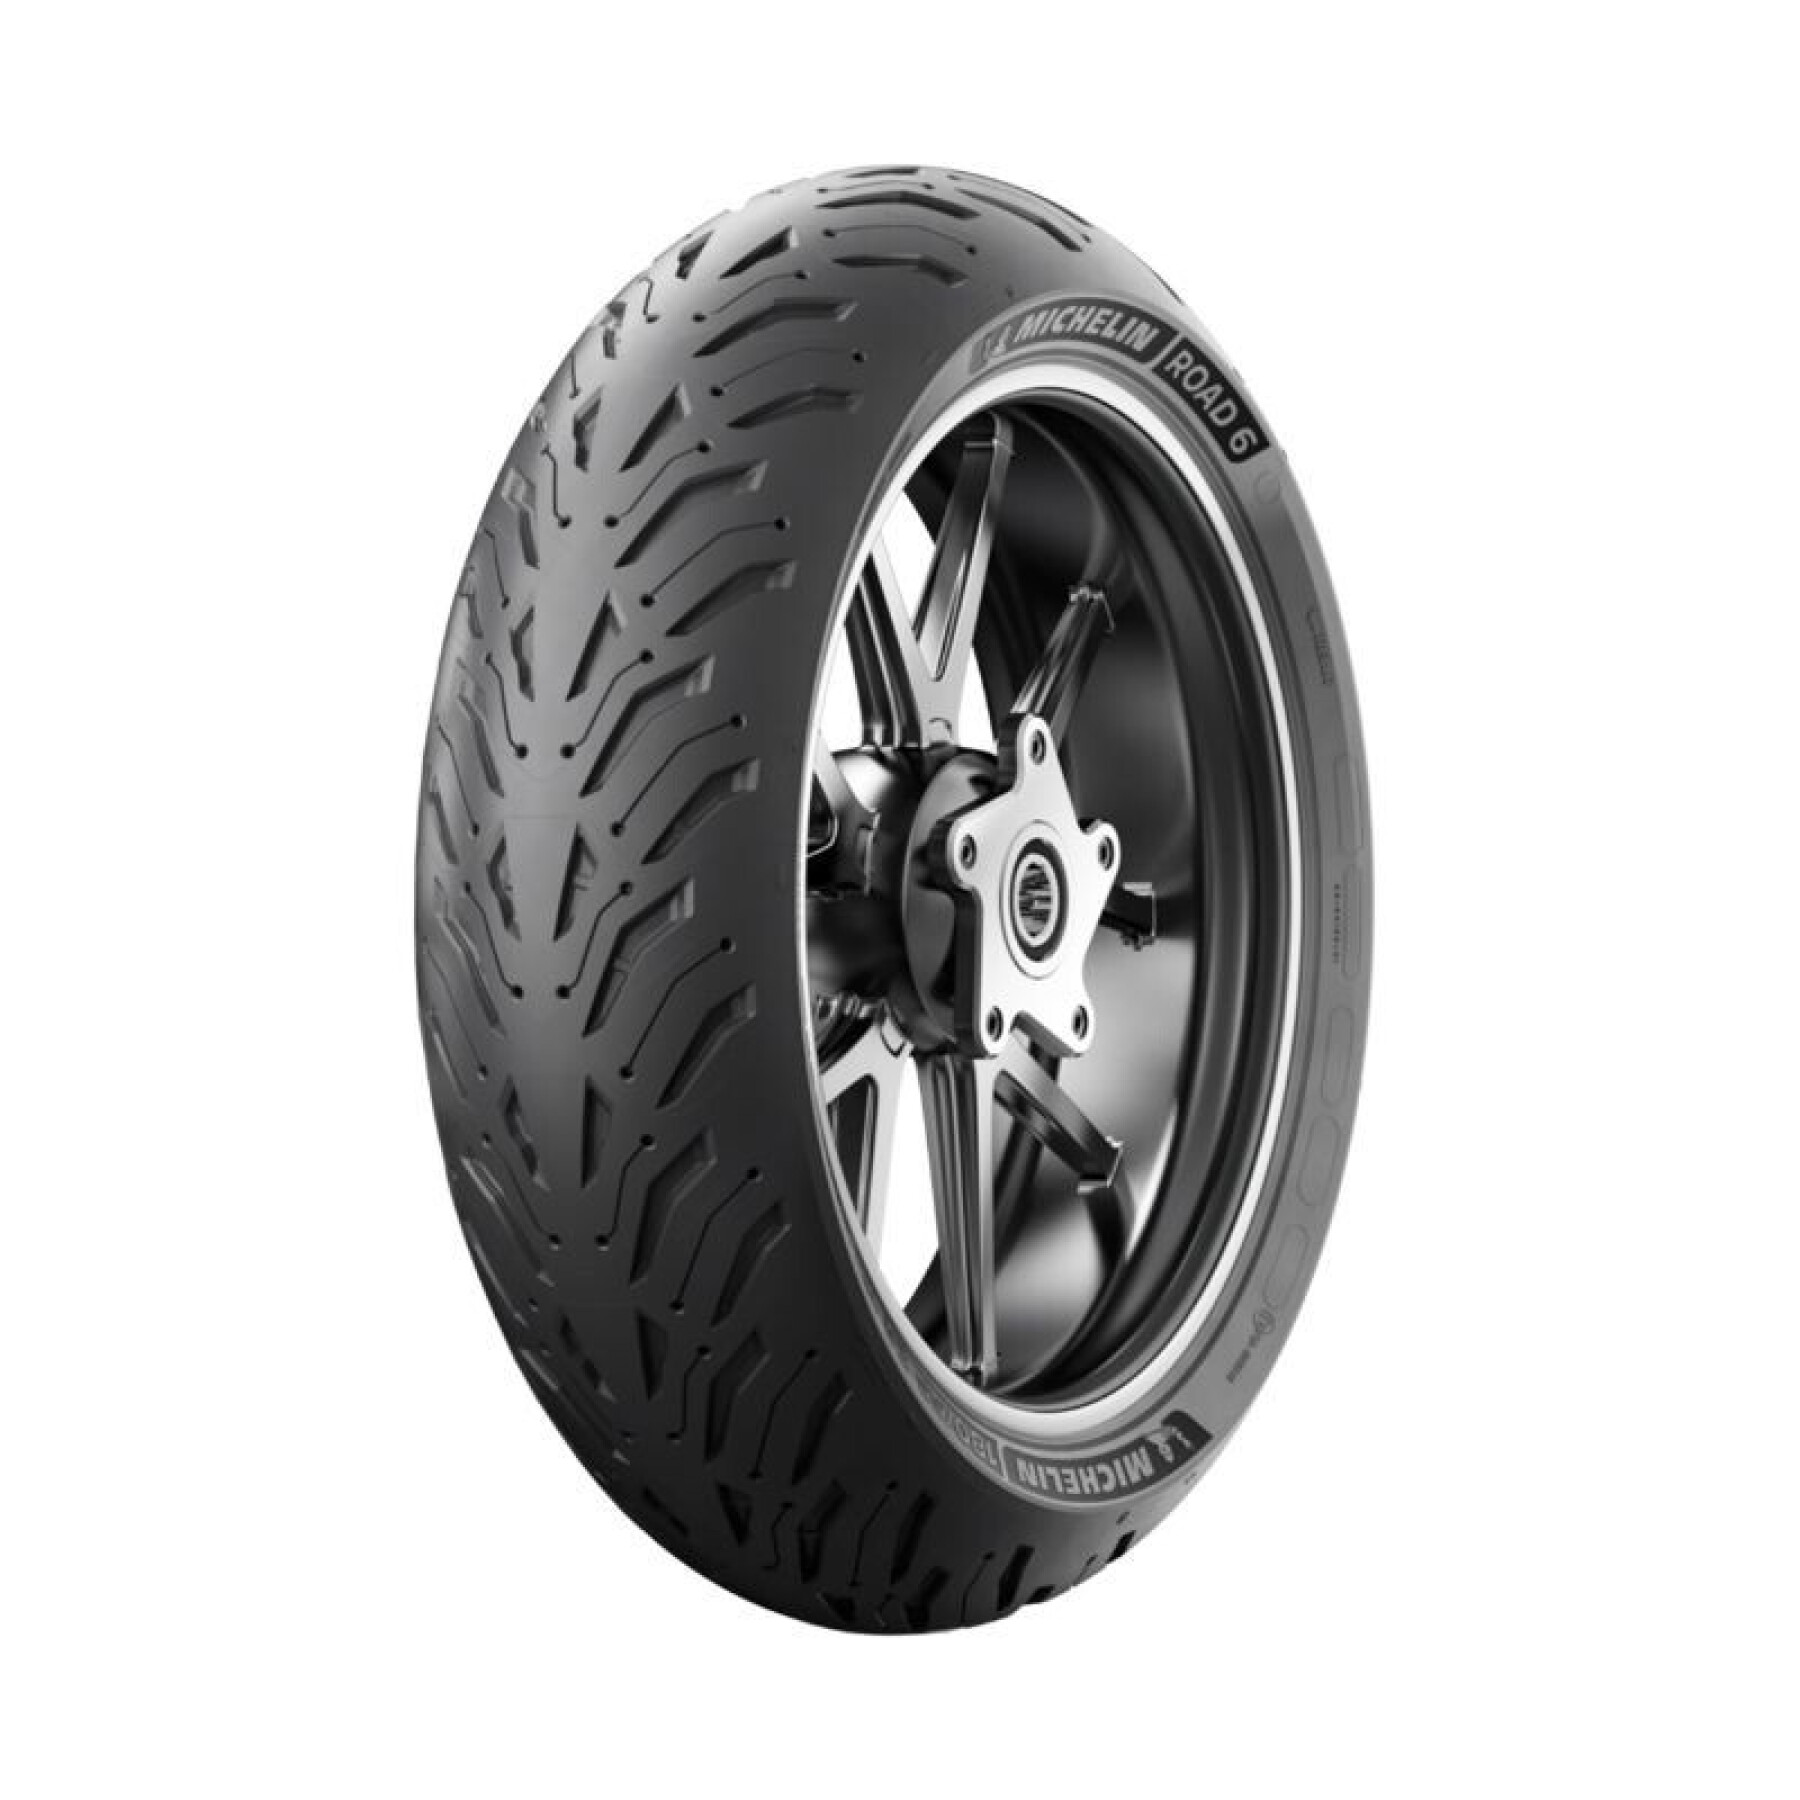 Rear tire Michelin Road 6 Radial ZR TL 69W 160-60-17